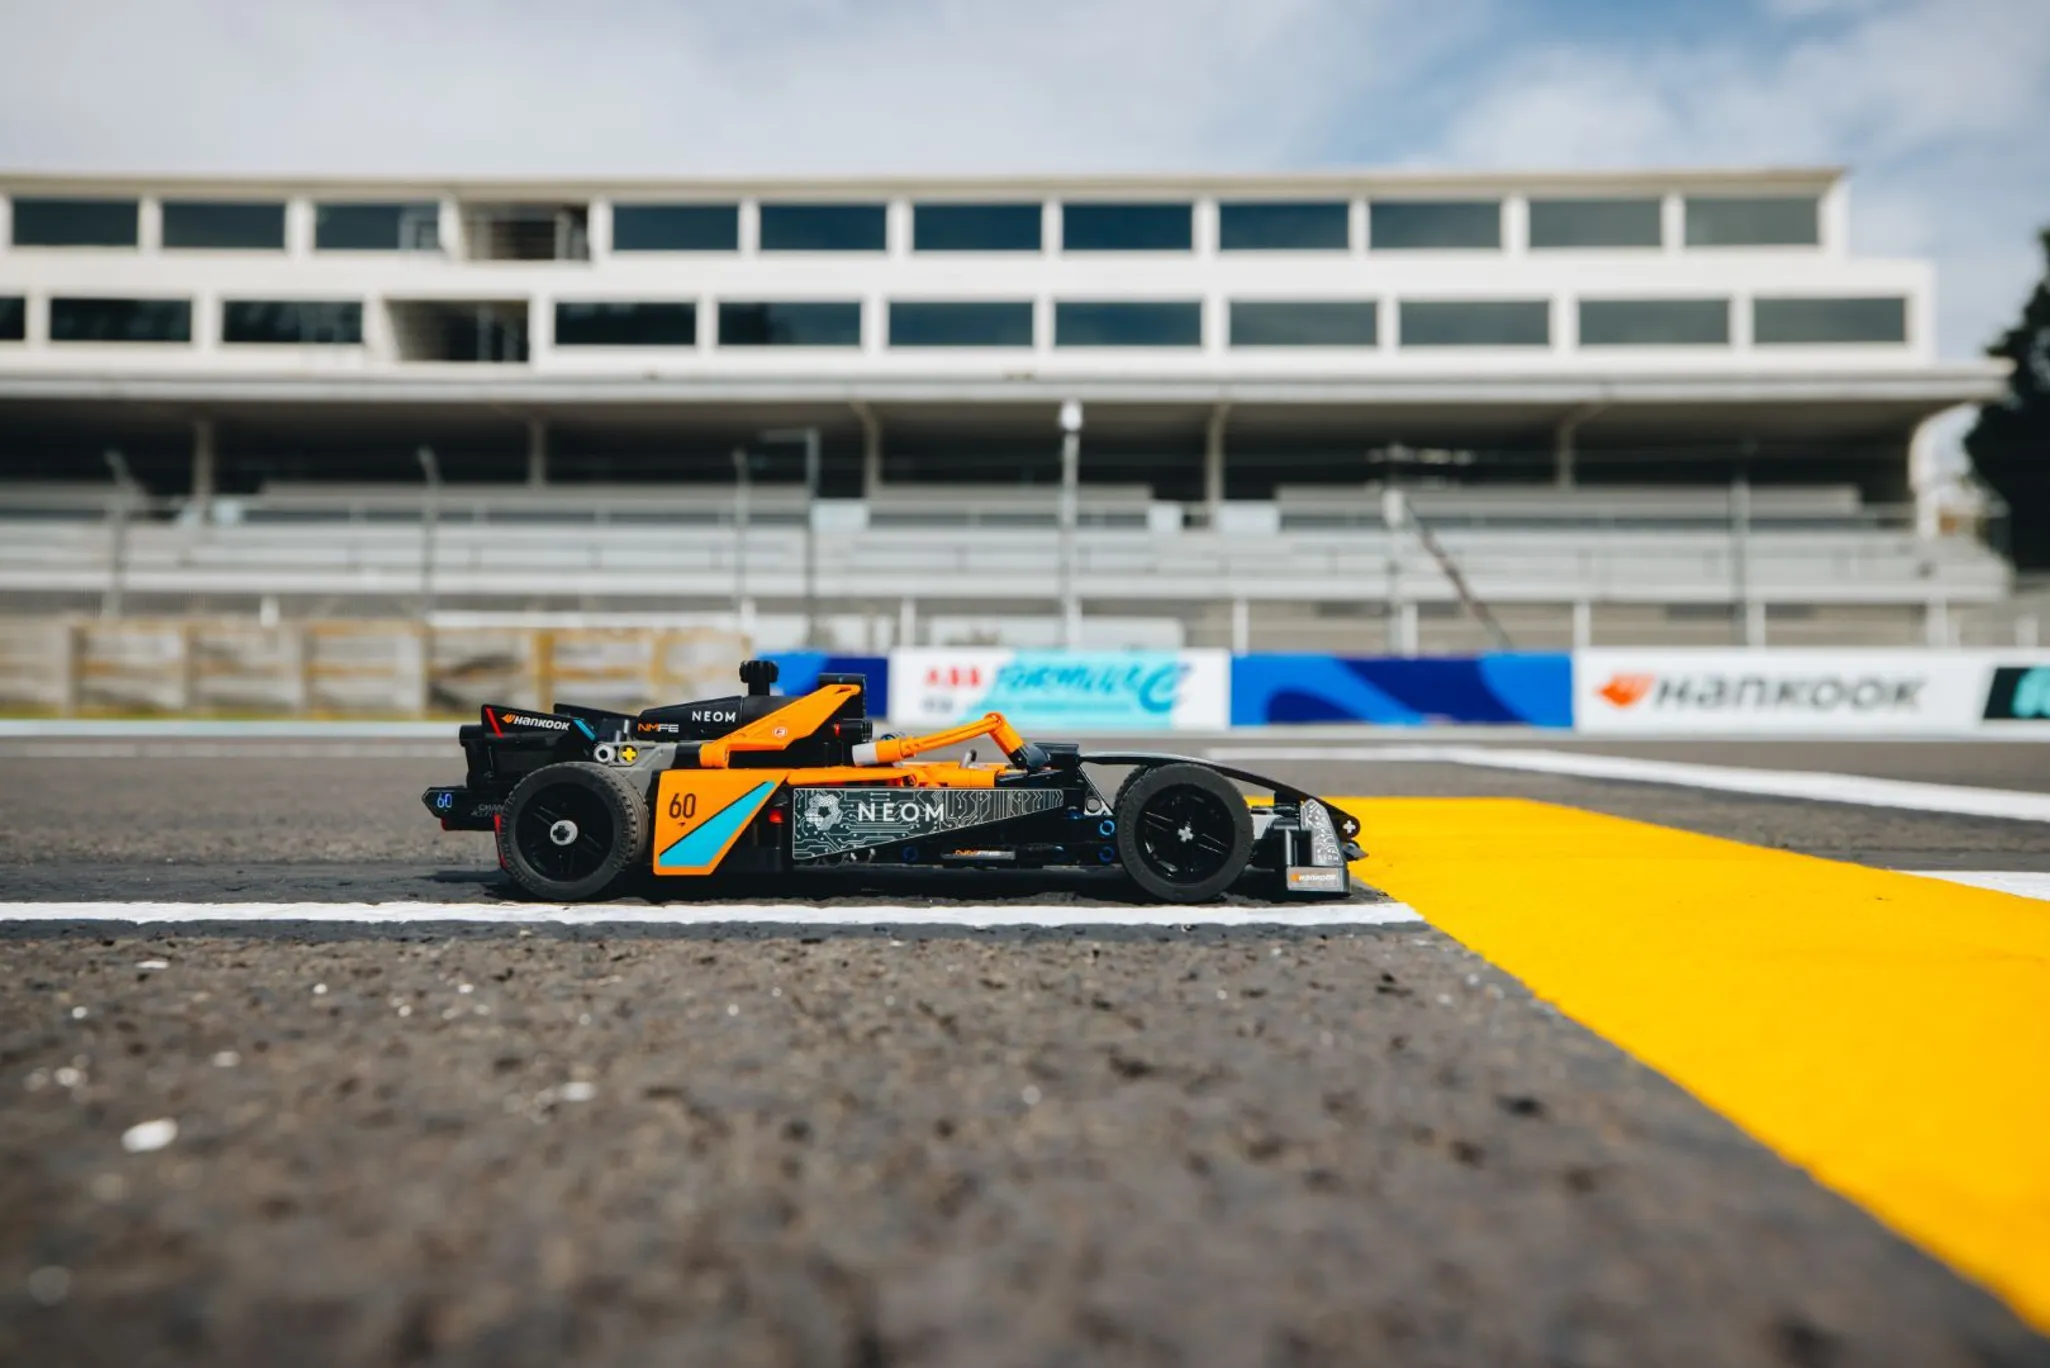 Wedstrijd win een LEGO® Technic NEOM McLaren Formula E wagen